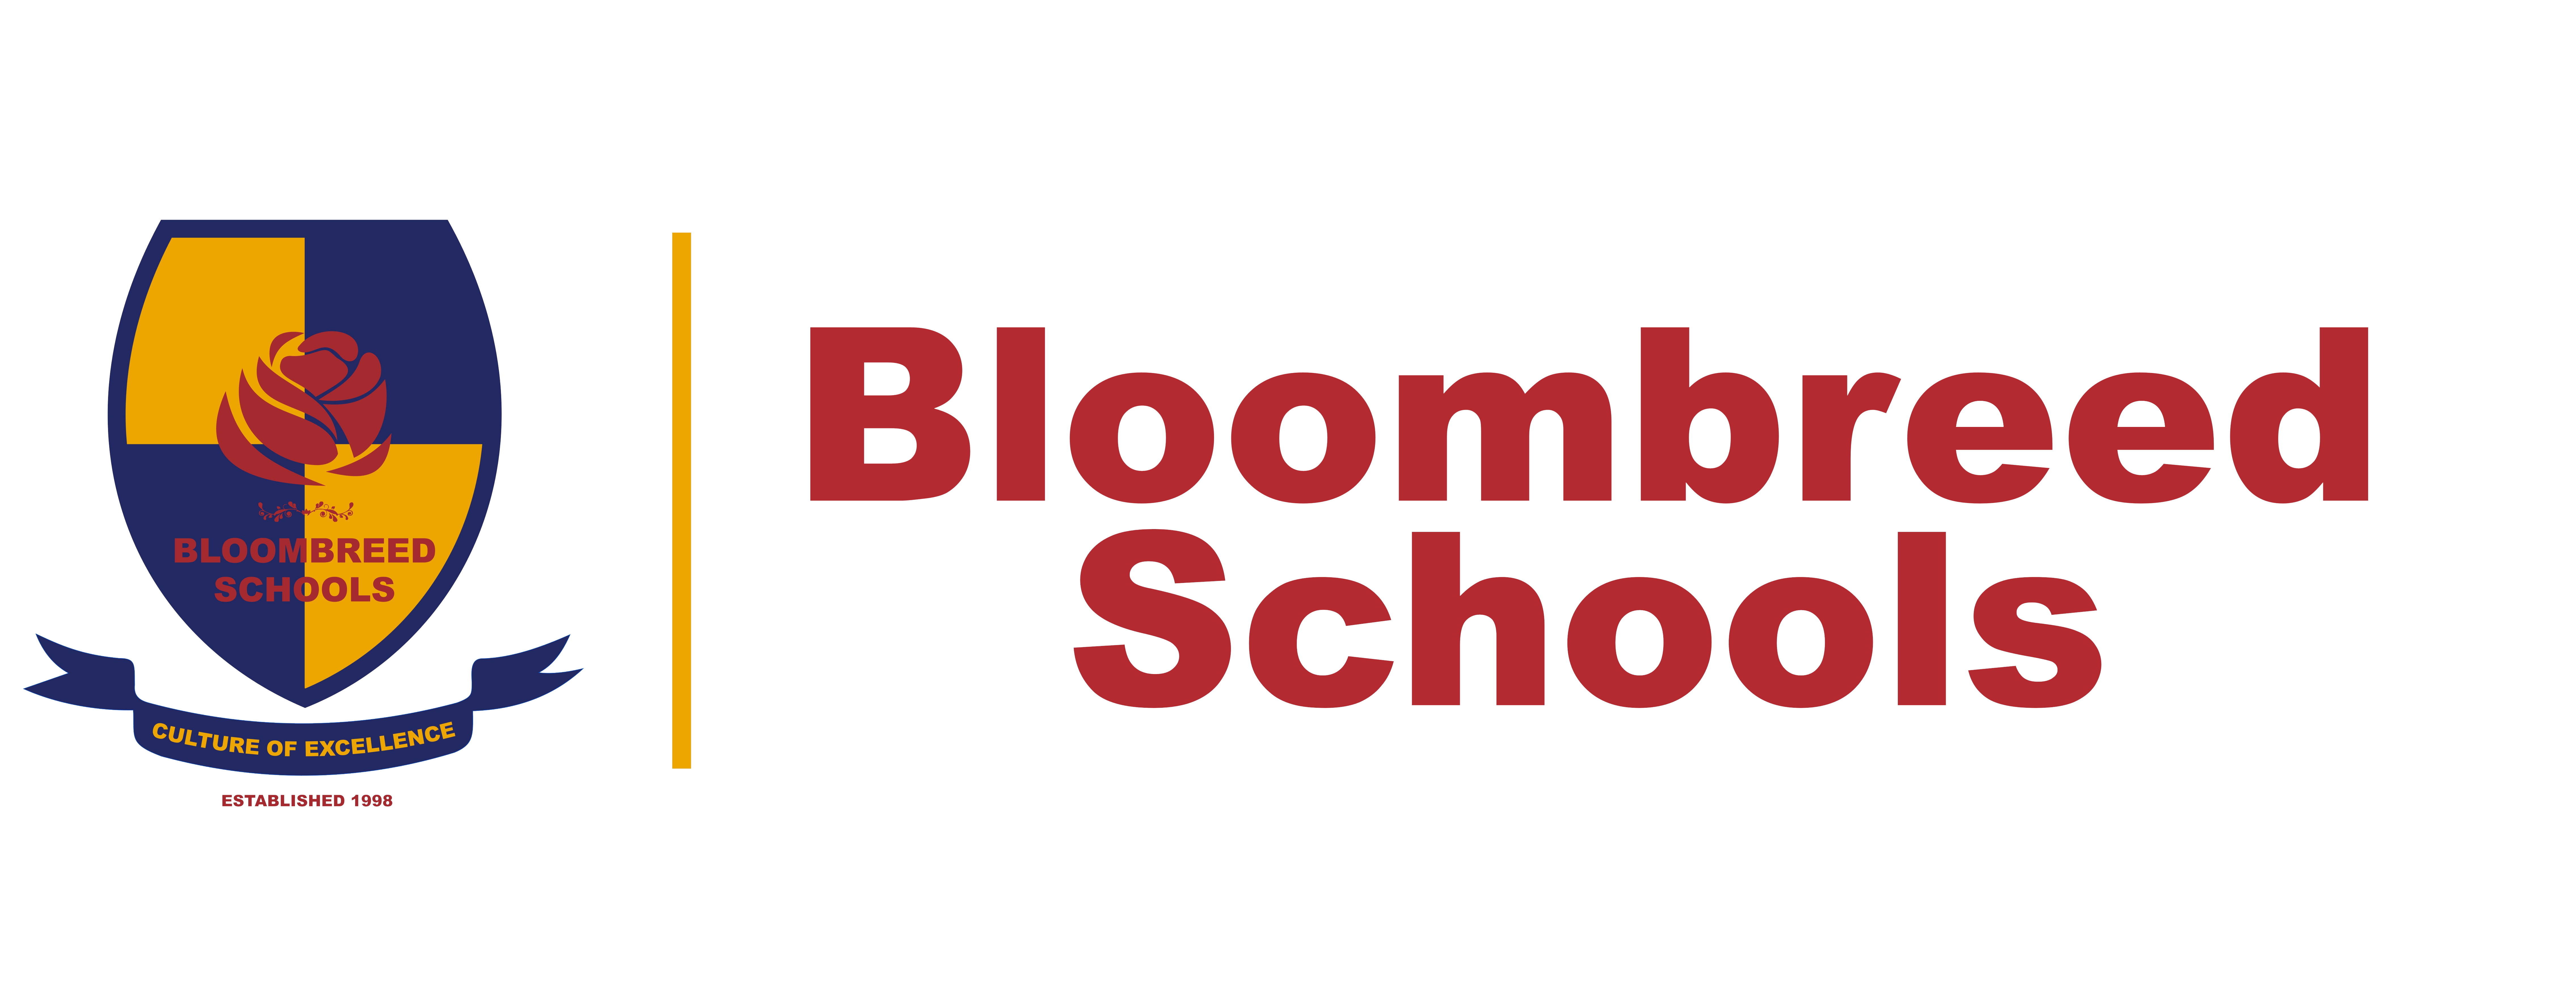 Bloombreed Schools